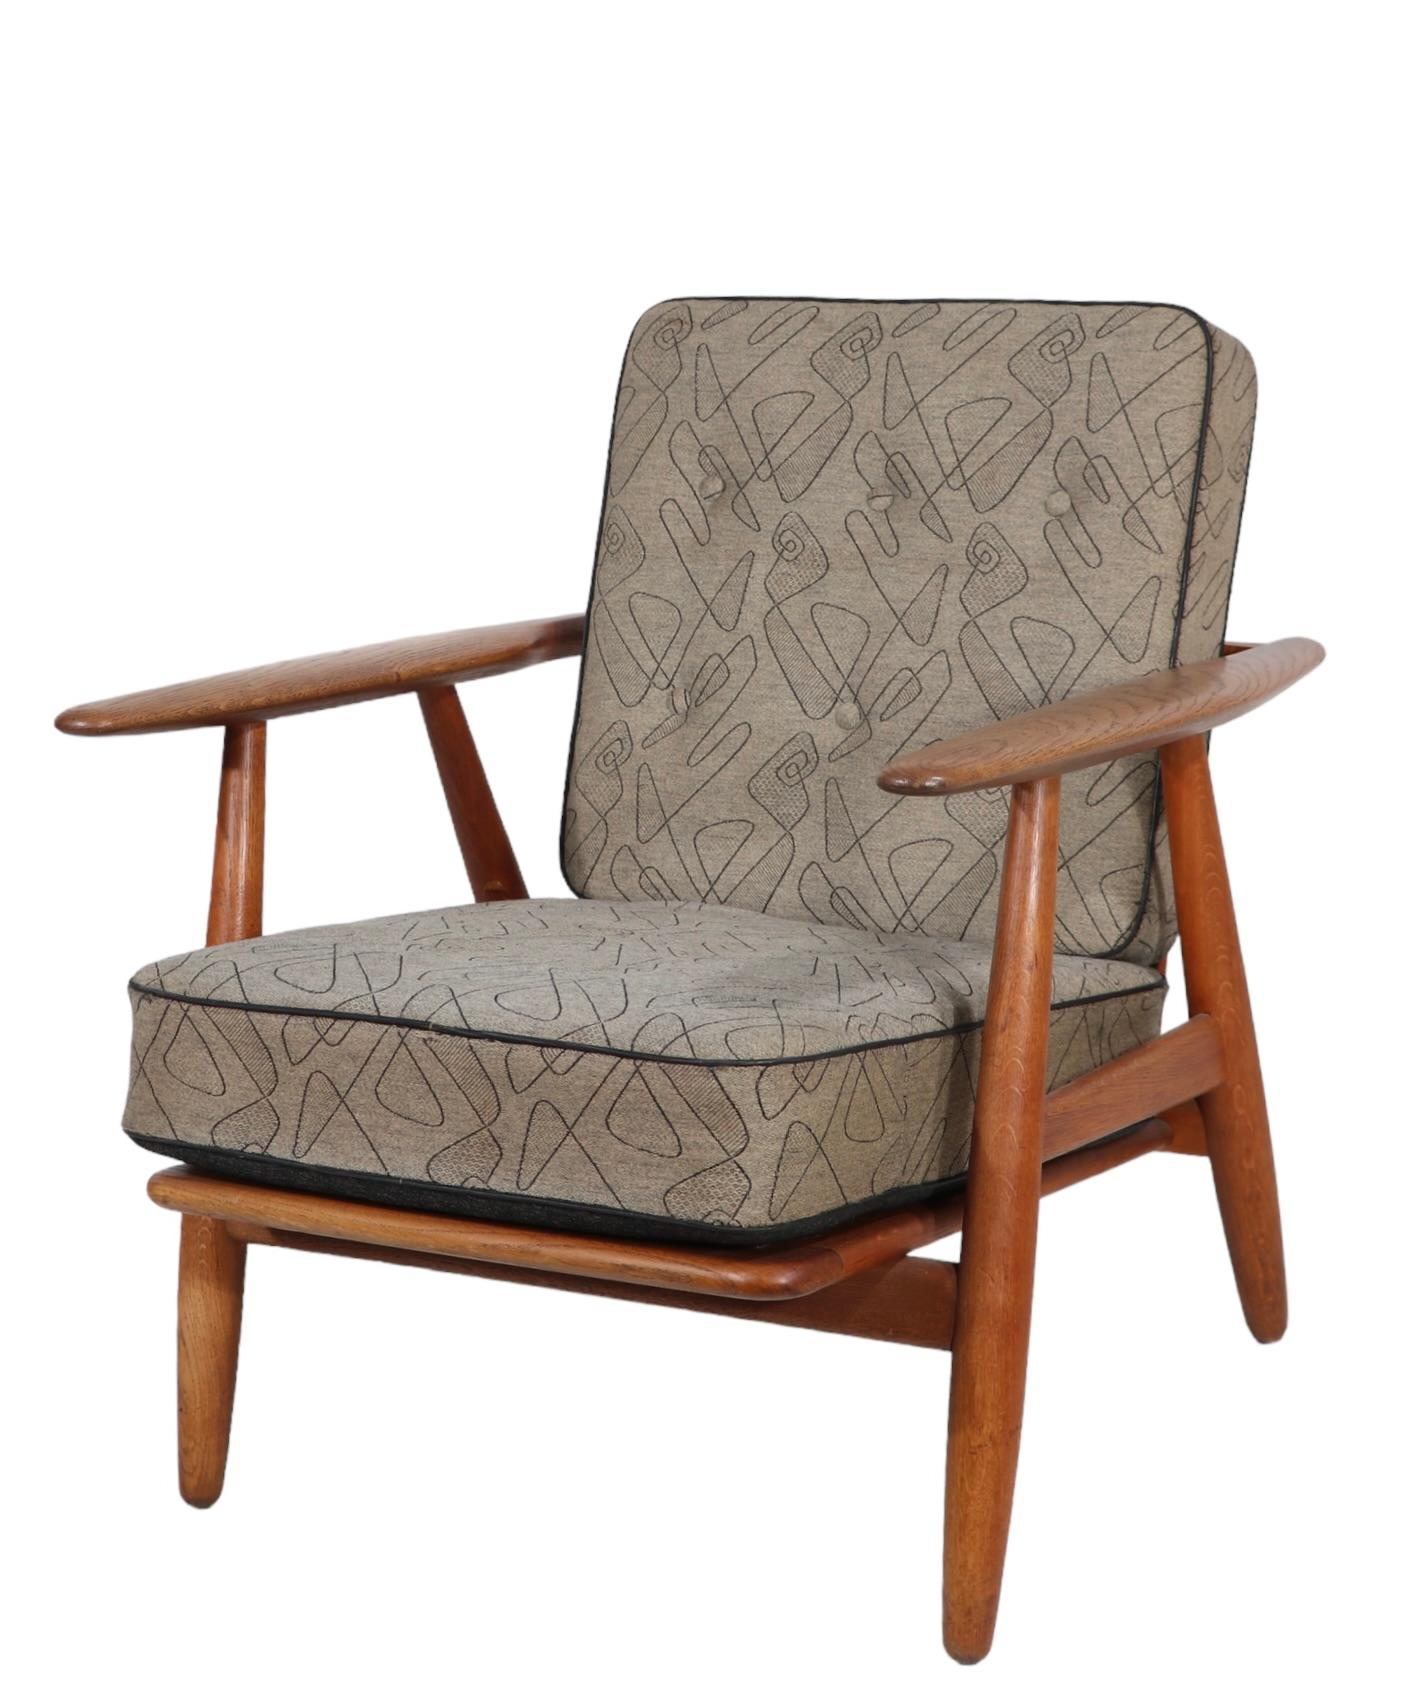 Upholstery Original Hans Wegner Cigar Chair Made in Denmark for GETAMA c 1950's For Sale